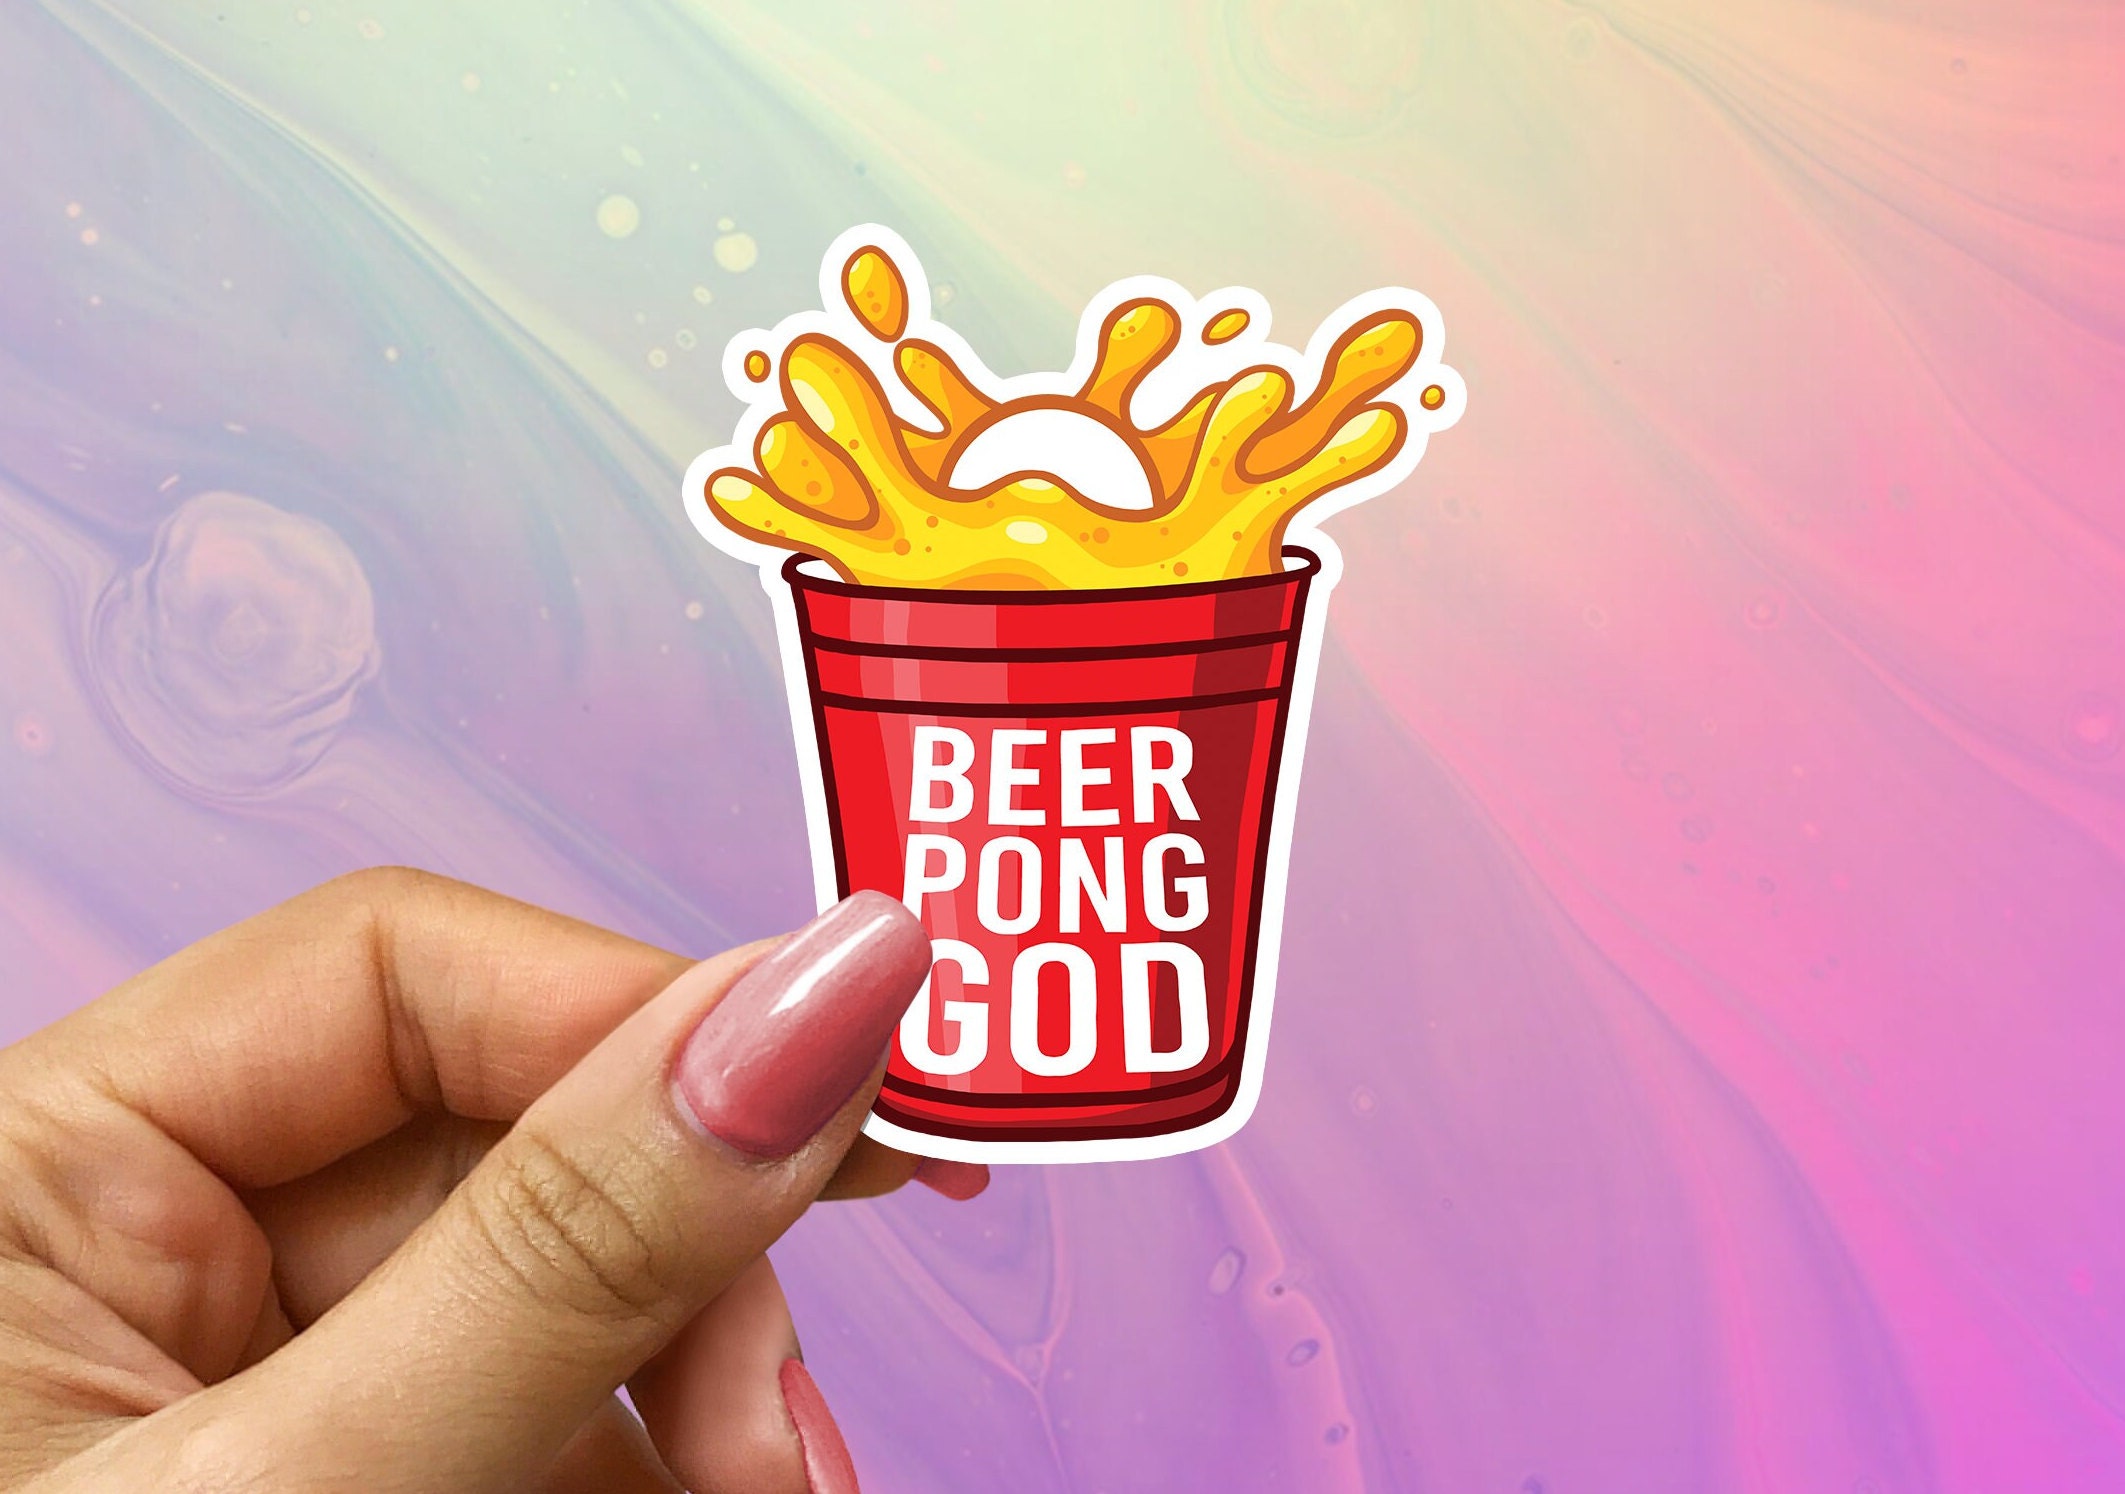 Beer Pong Tisch - Tisch Beer Pong God Pong - ORIGINAL CUP